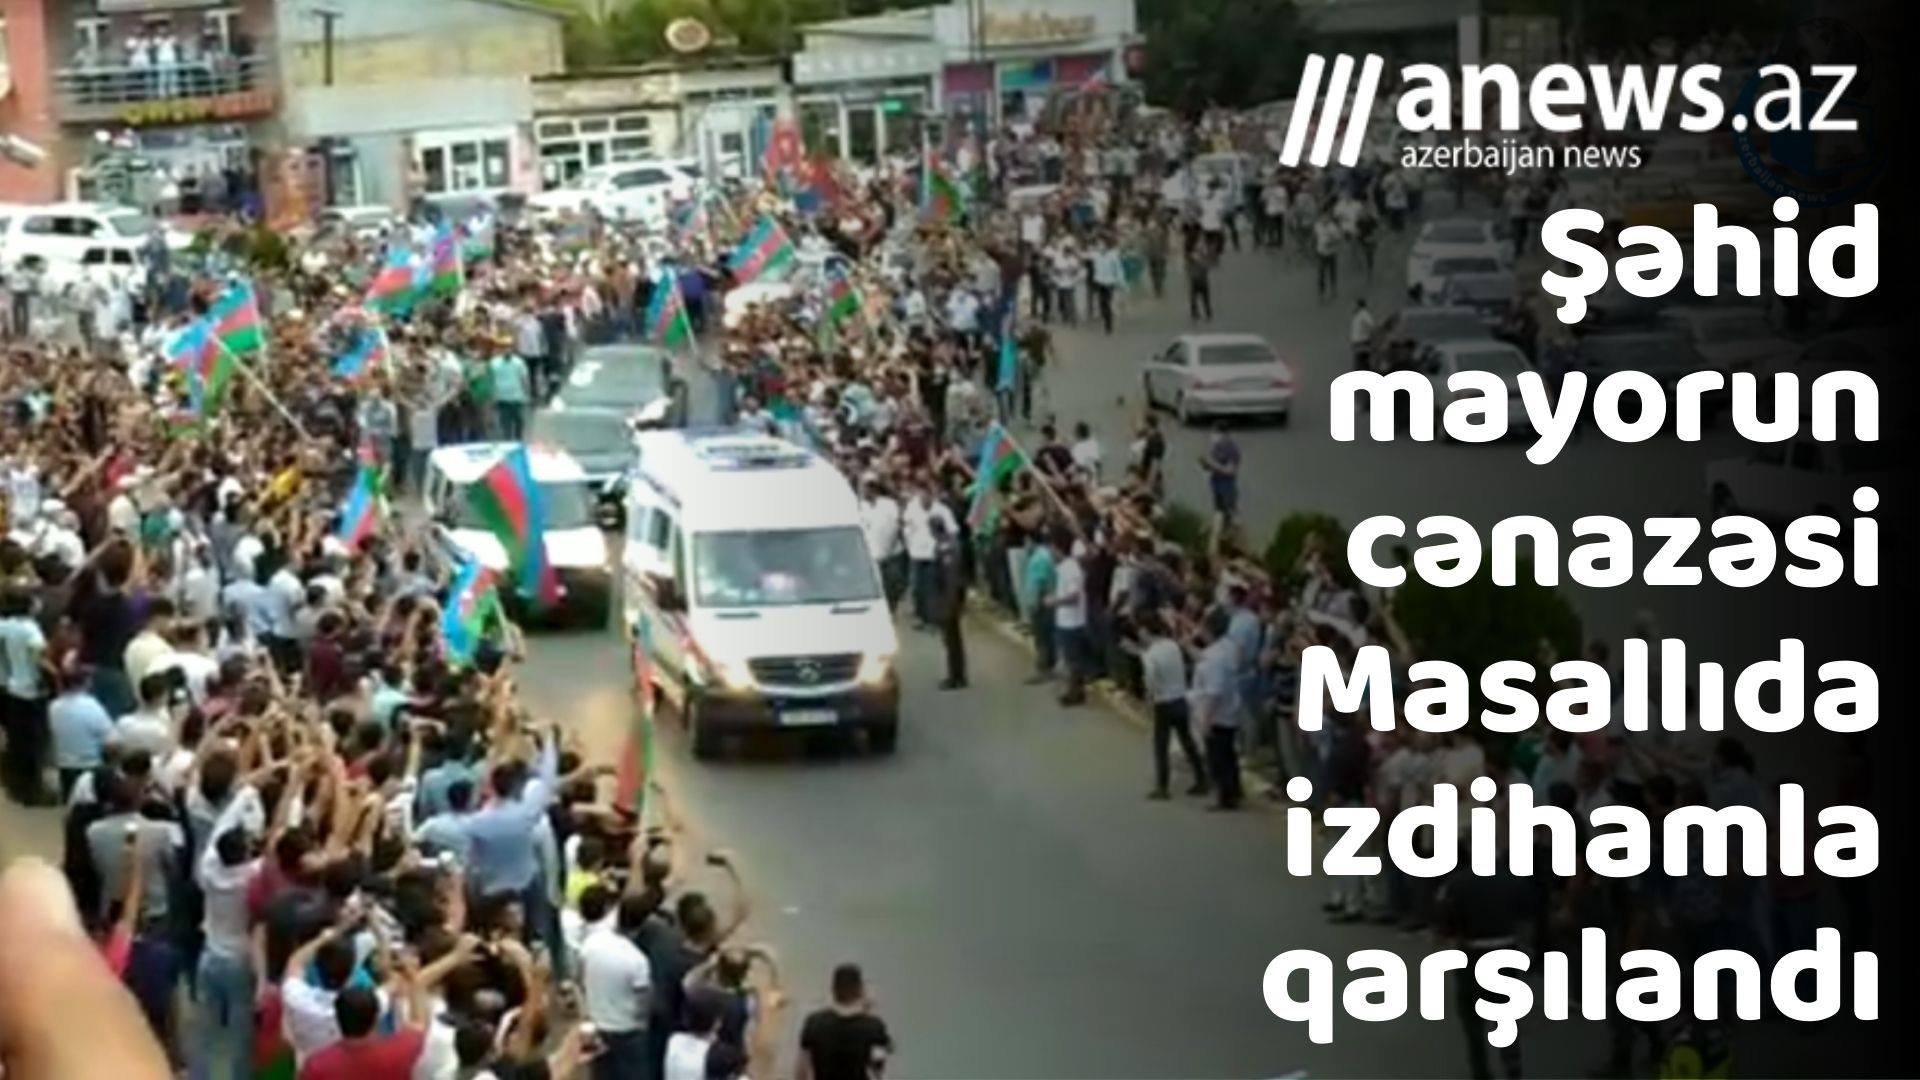 Şəhid Anar Namazovun cənazəsi Masallıda izdihamla qarşılandı - VİDEO